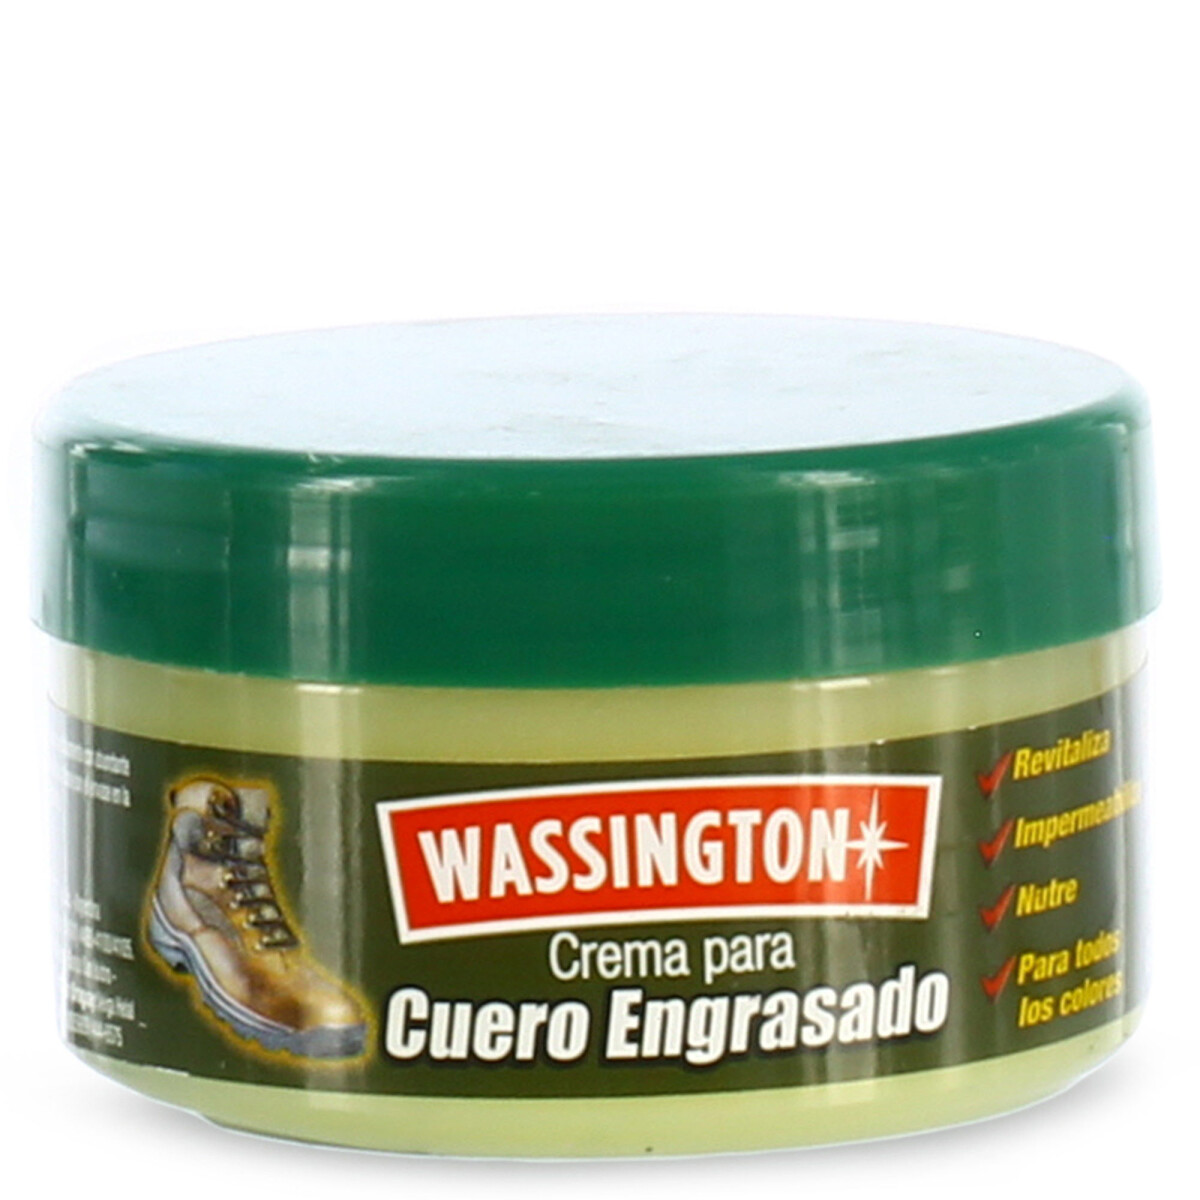 Crema p/ Engrasar Wassington - Natural 